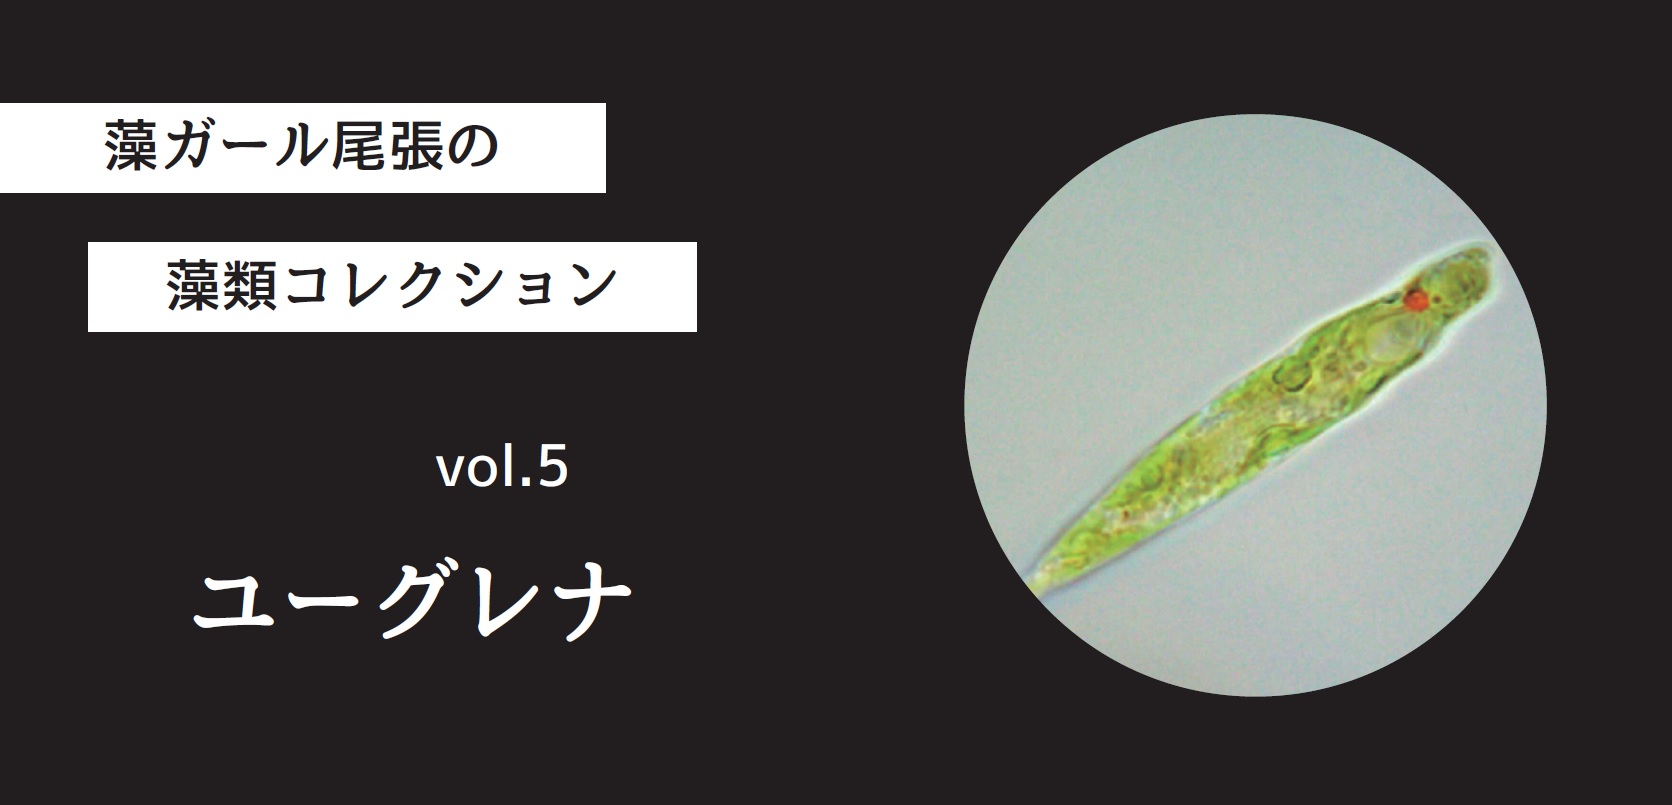 藻ガール尾張の藻類コレクション Vol 5 ユーグレナ Modia 藻ディア